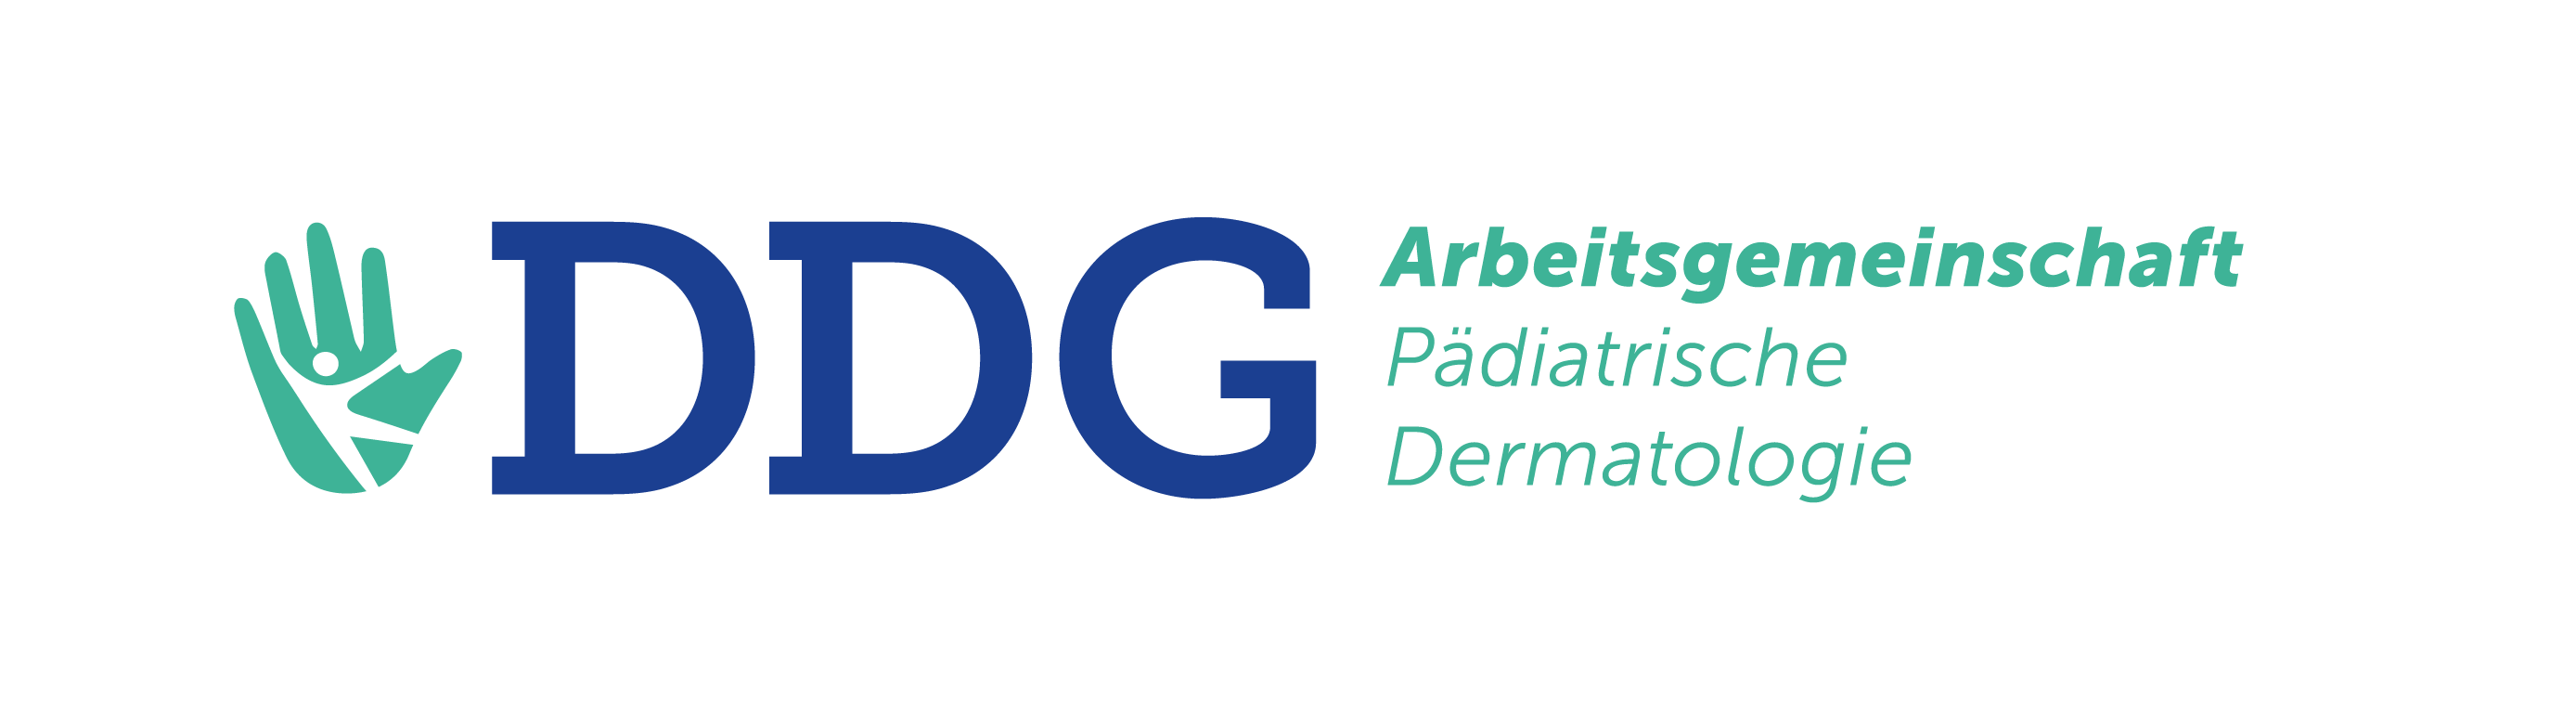 Logo der AG ädiatrische Dermatologie